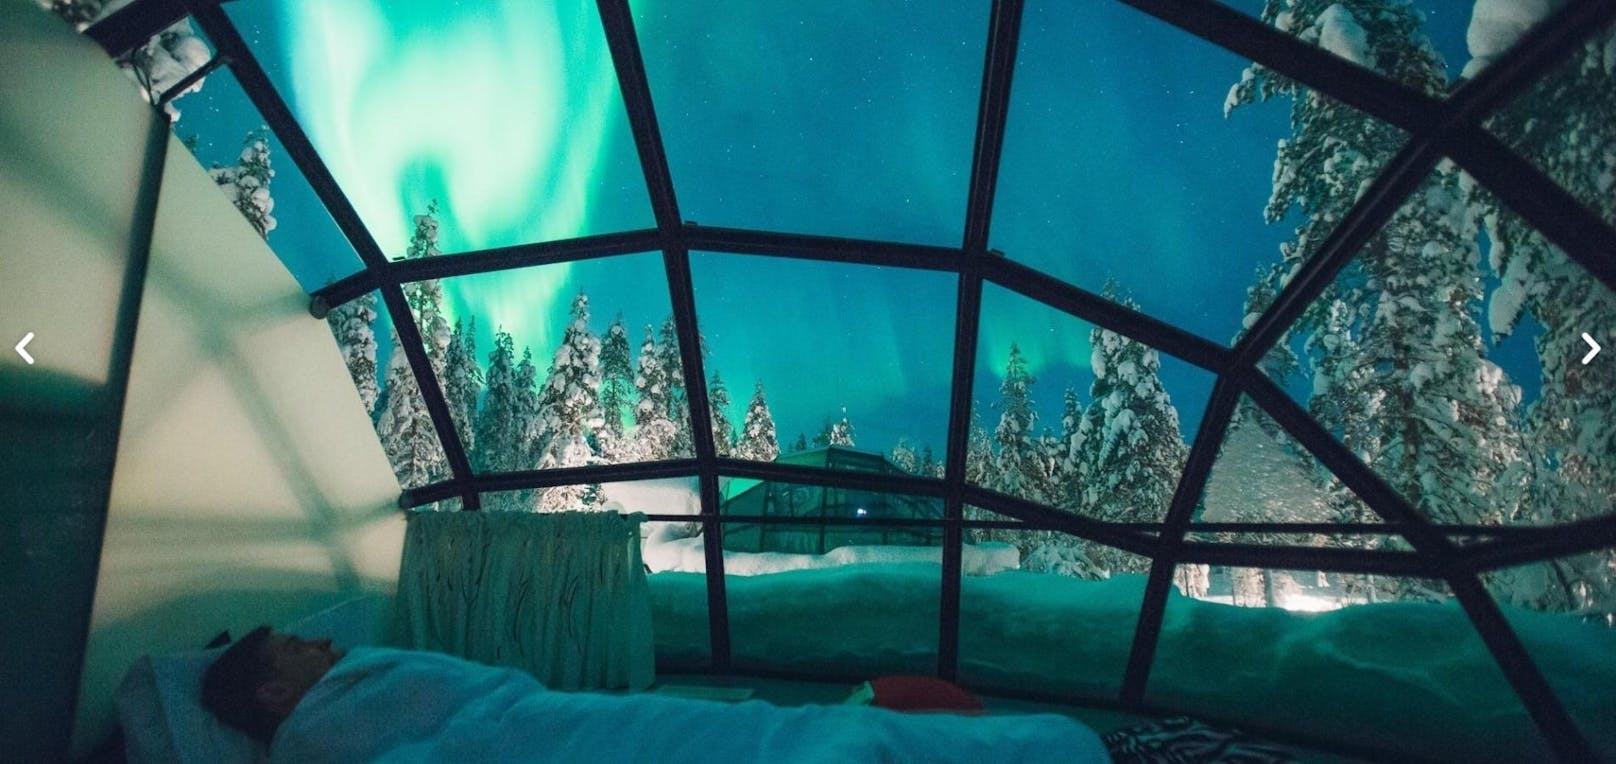 Ein moderner Klassiker: Die Glas-Iglus des Kakslauttanen Arctic Resort in Finnisch-Lappland. Vom kuschligen Bett aus die Nordlichter betrachten? Gar kein Problem! <a href="http://www.kakslauttanen.fi/de/">www.kakslauttanen.fi</a>